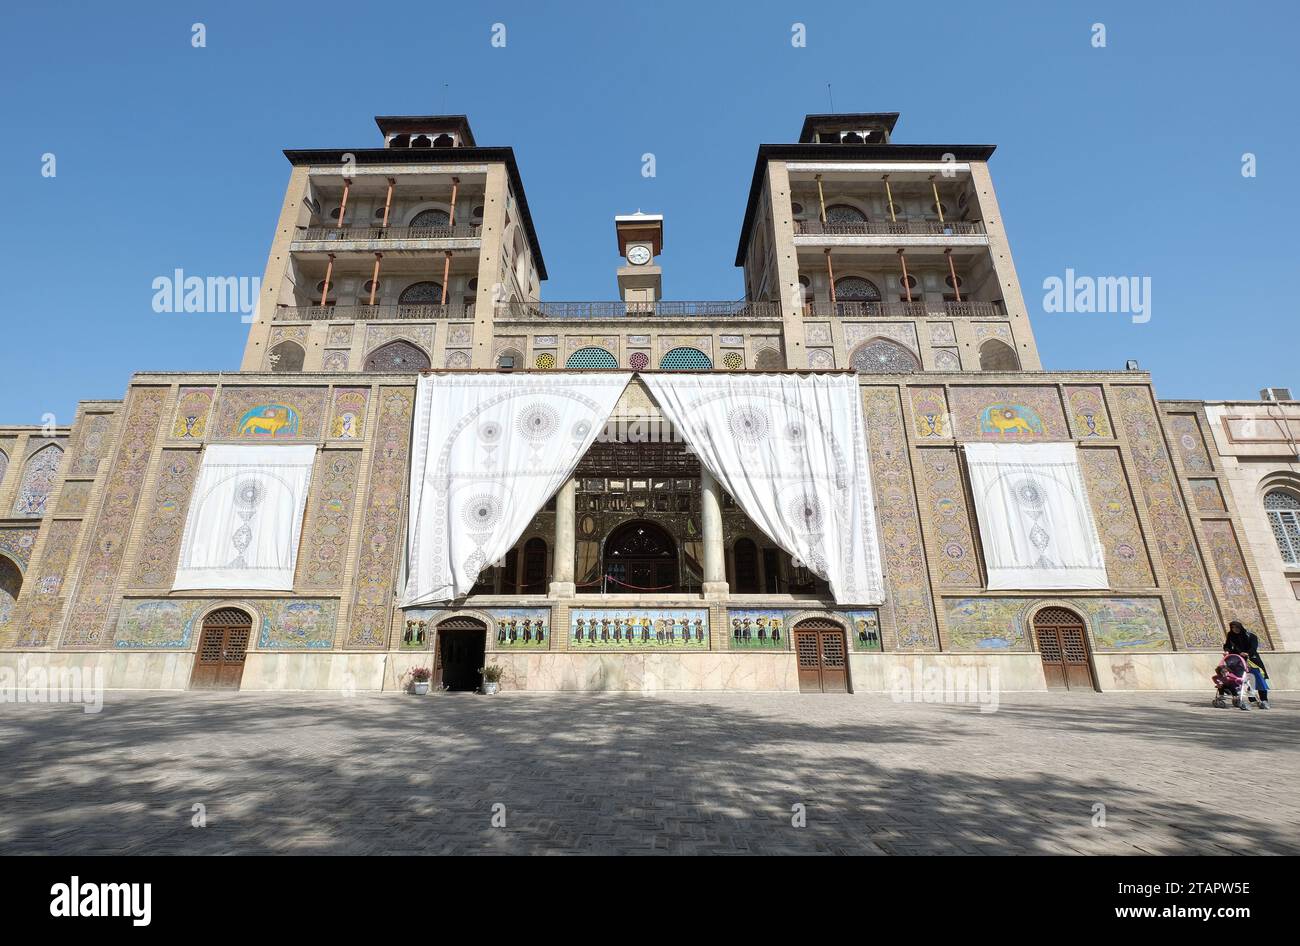 Vue à angle bas du palais Golestan dans la ville de Téhéran, Iran. Aussi connu sous le nom de Rose Garden Palace. Banque D'Images